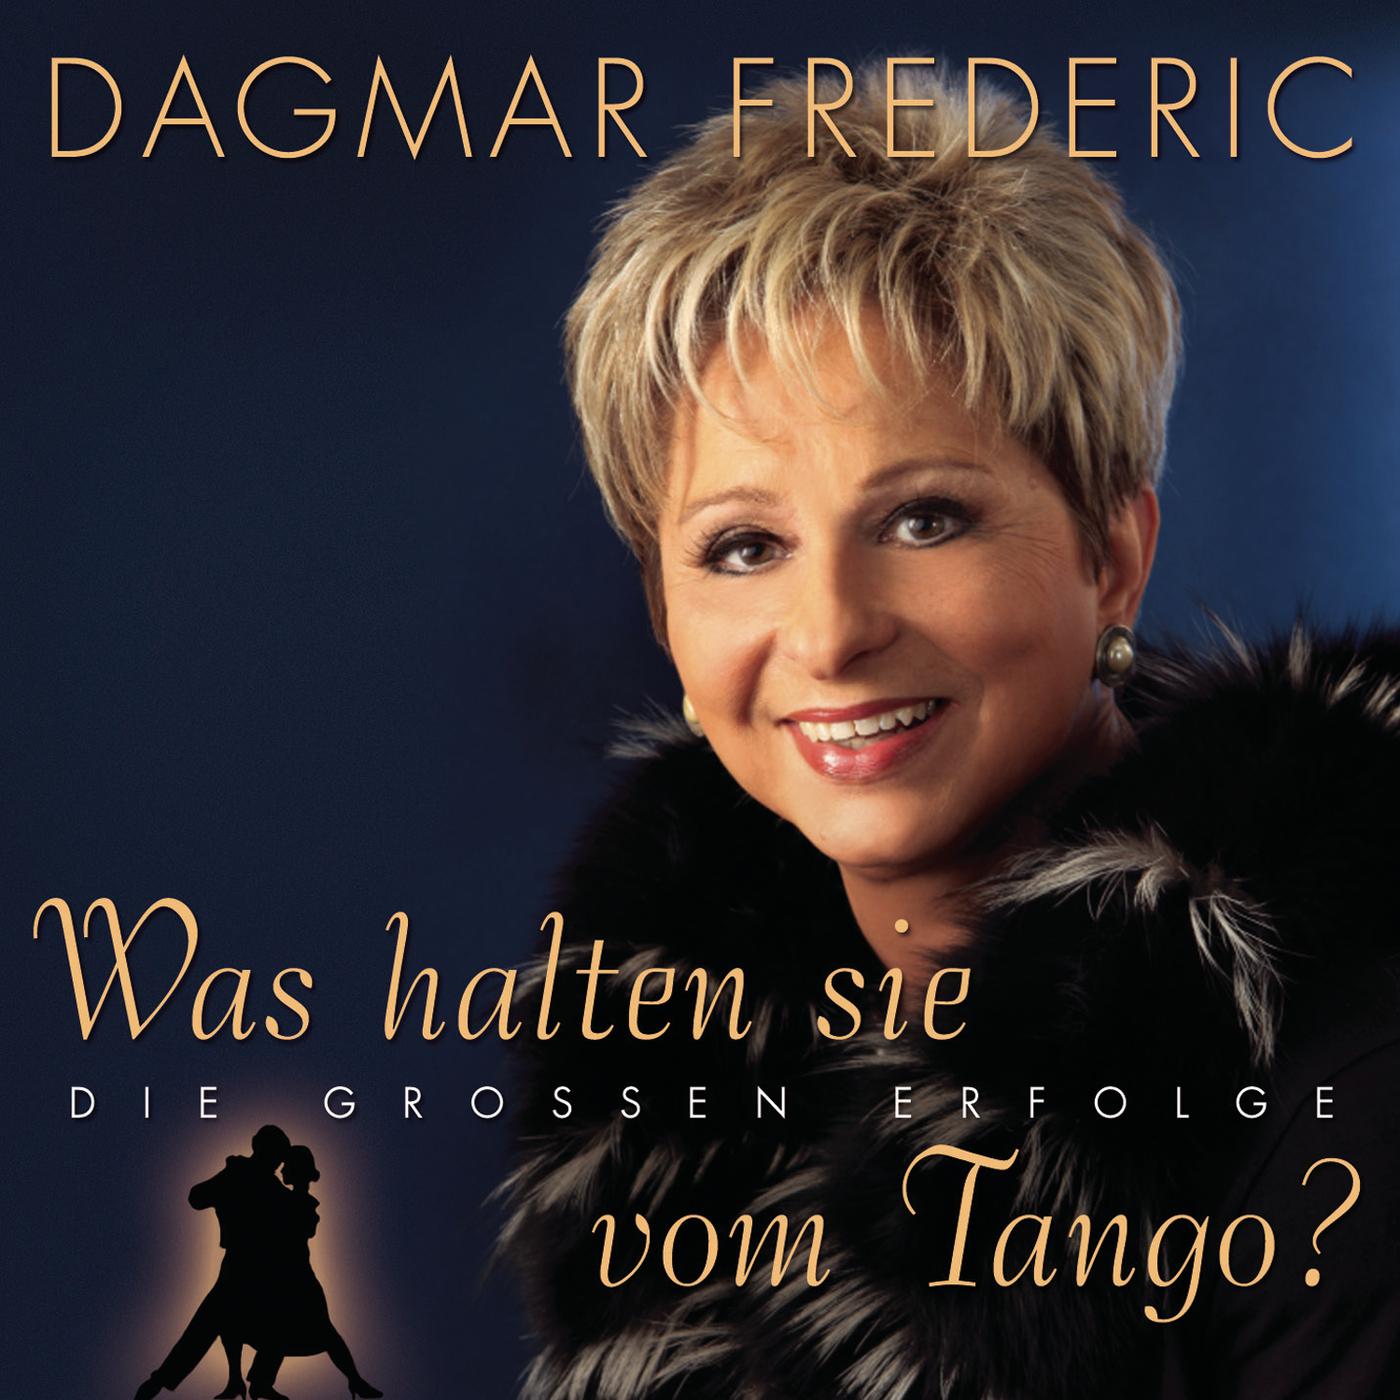 Dagmar Frederic - Was halten sie vom Tango